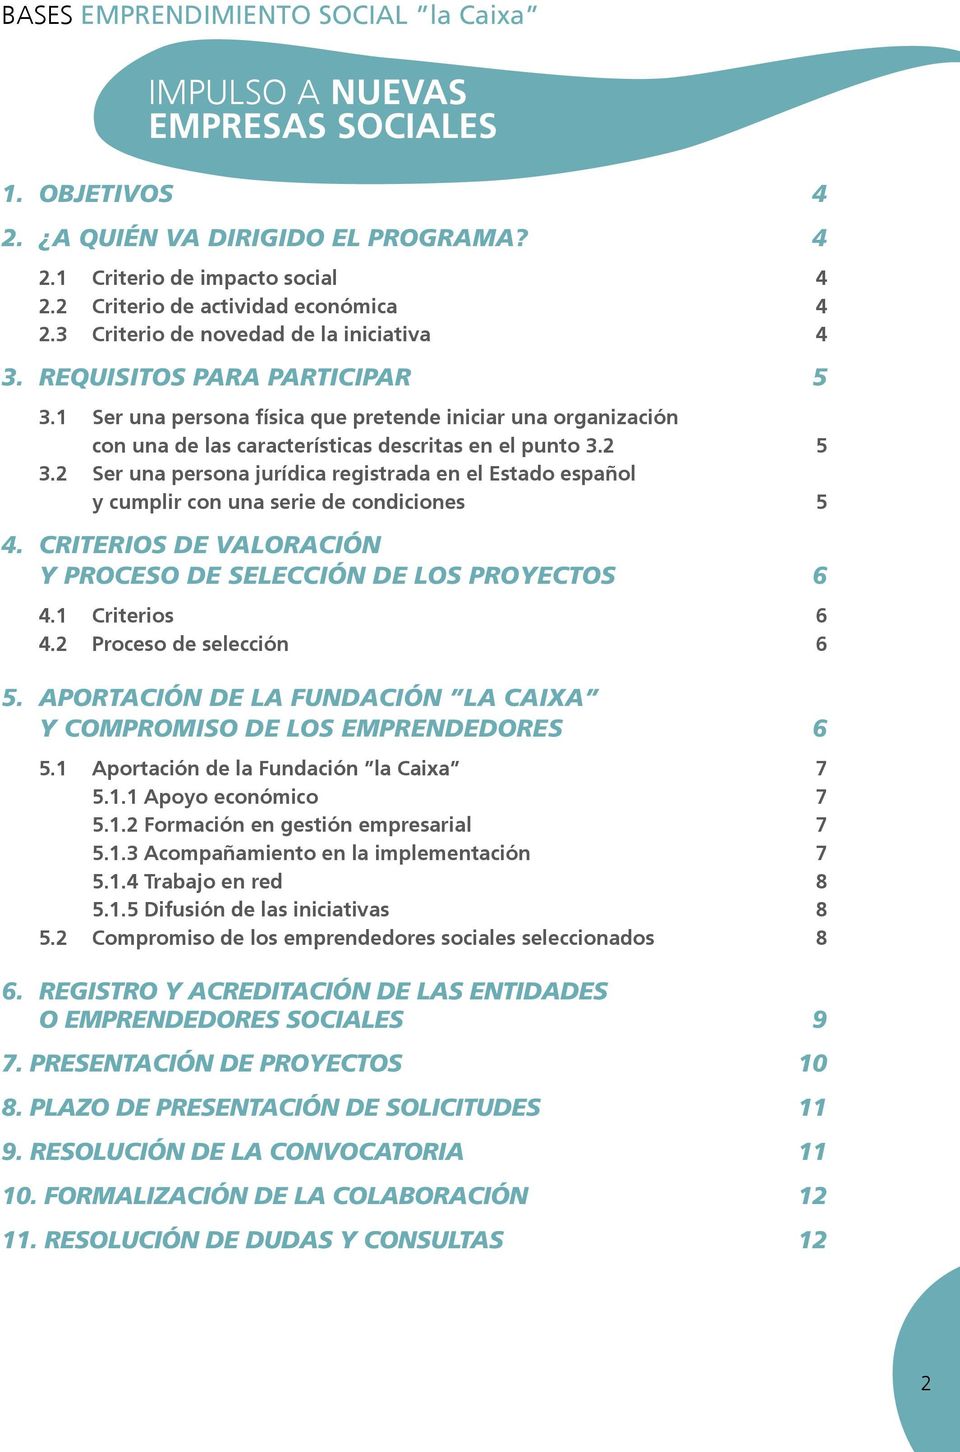 2 Ser una persona jurídica registrada en el Estado español y cumplir con una serie de condiciones 5 4. CRITERIOS DE VALORACIÓN Y PROCESO DE SELECCIÓN DE LOS PROYECTOS 6 4.1 Criterios 6 4.